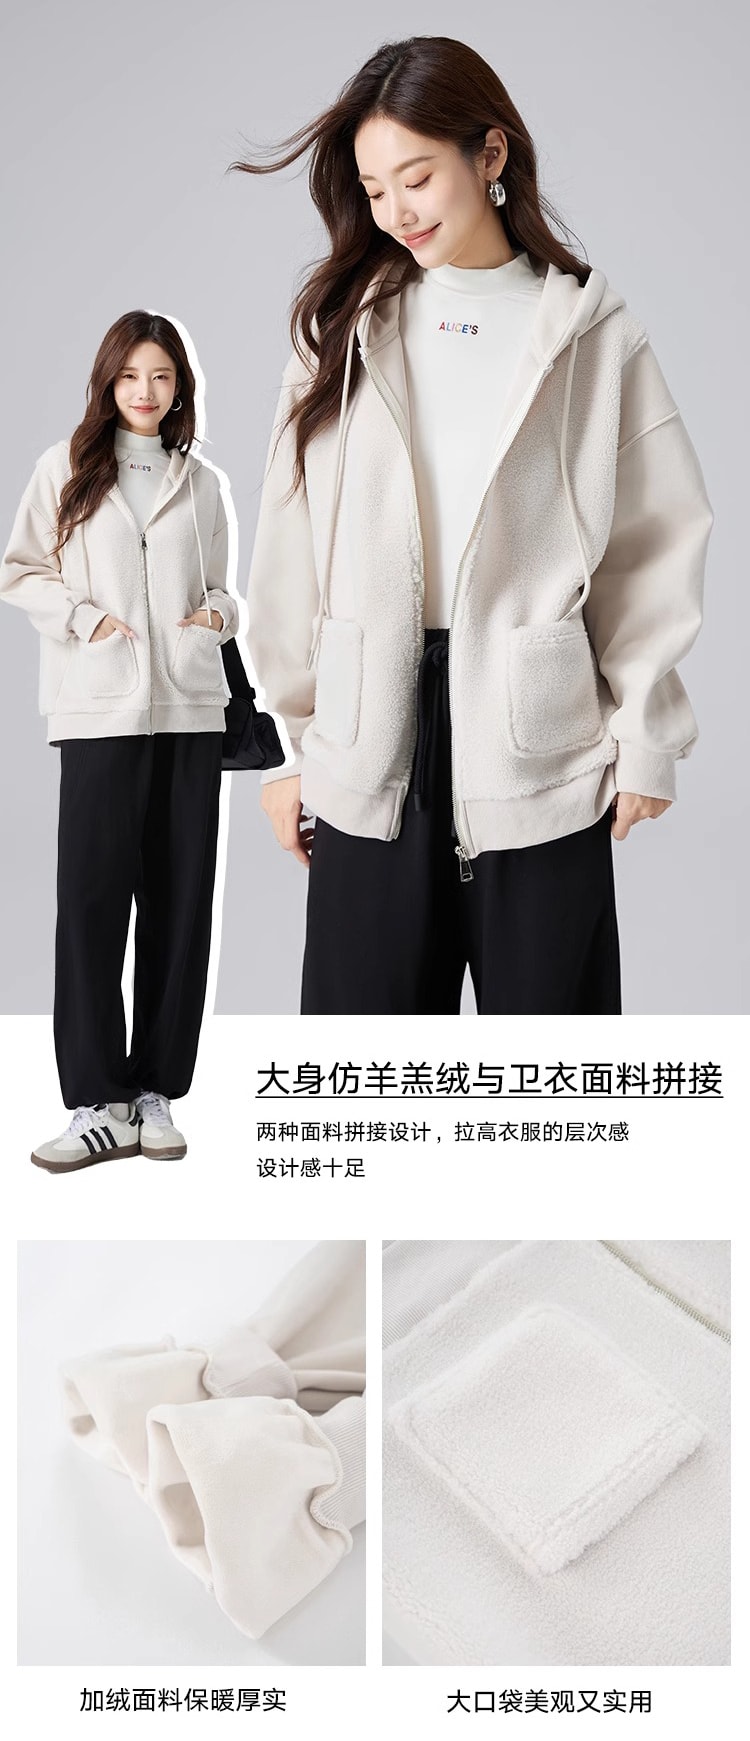 【中国直邮】HSPM 新款拼接连帽卫衣外套 米白色升级版(内里加绒) M